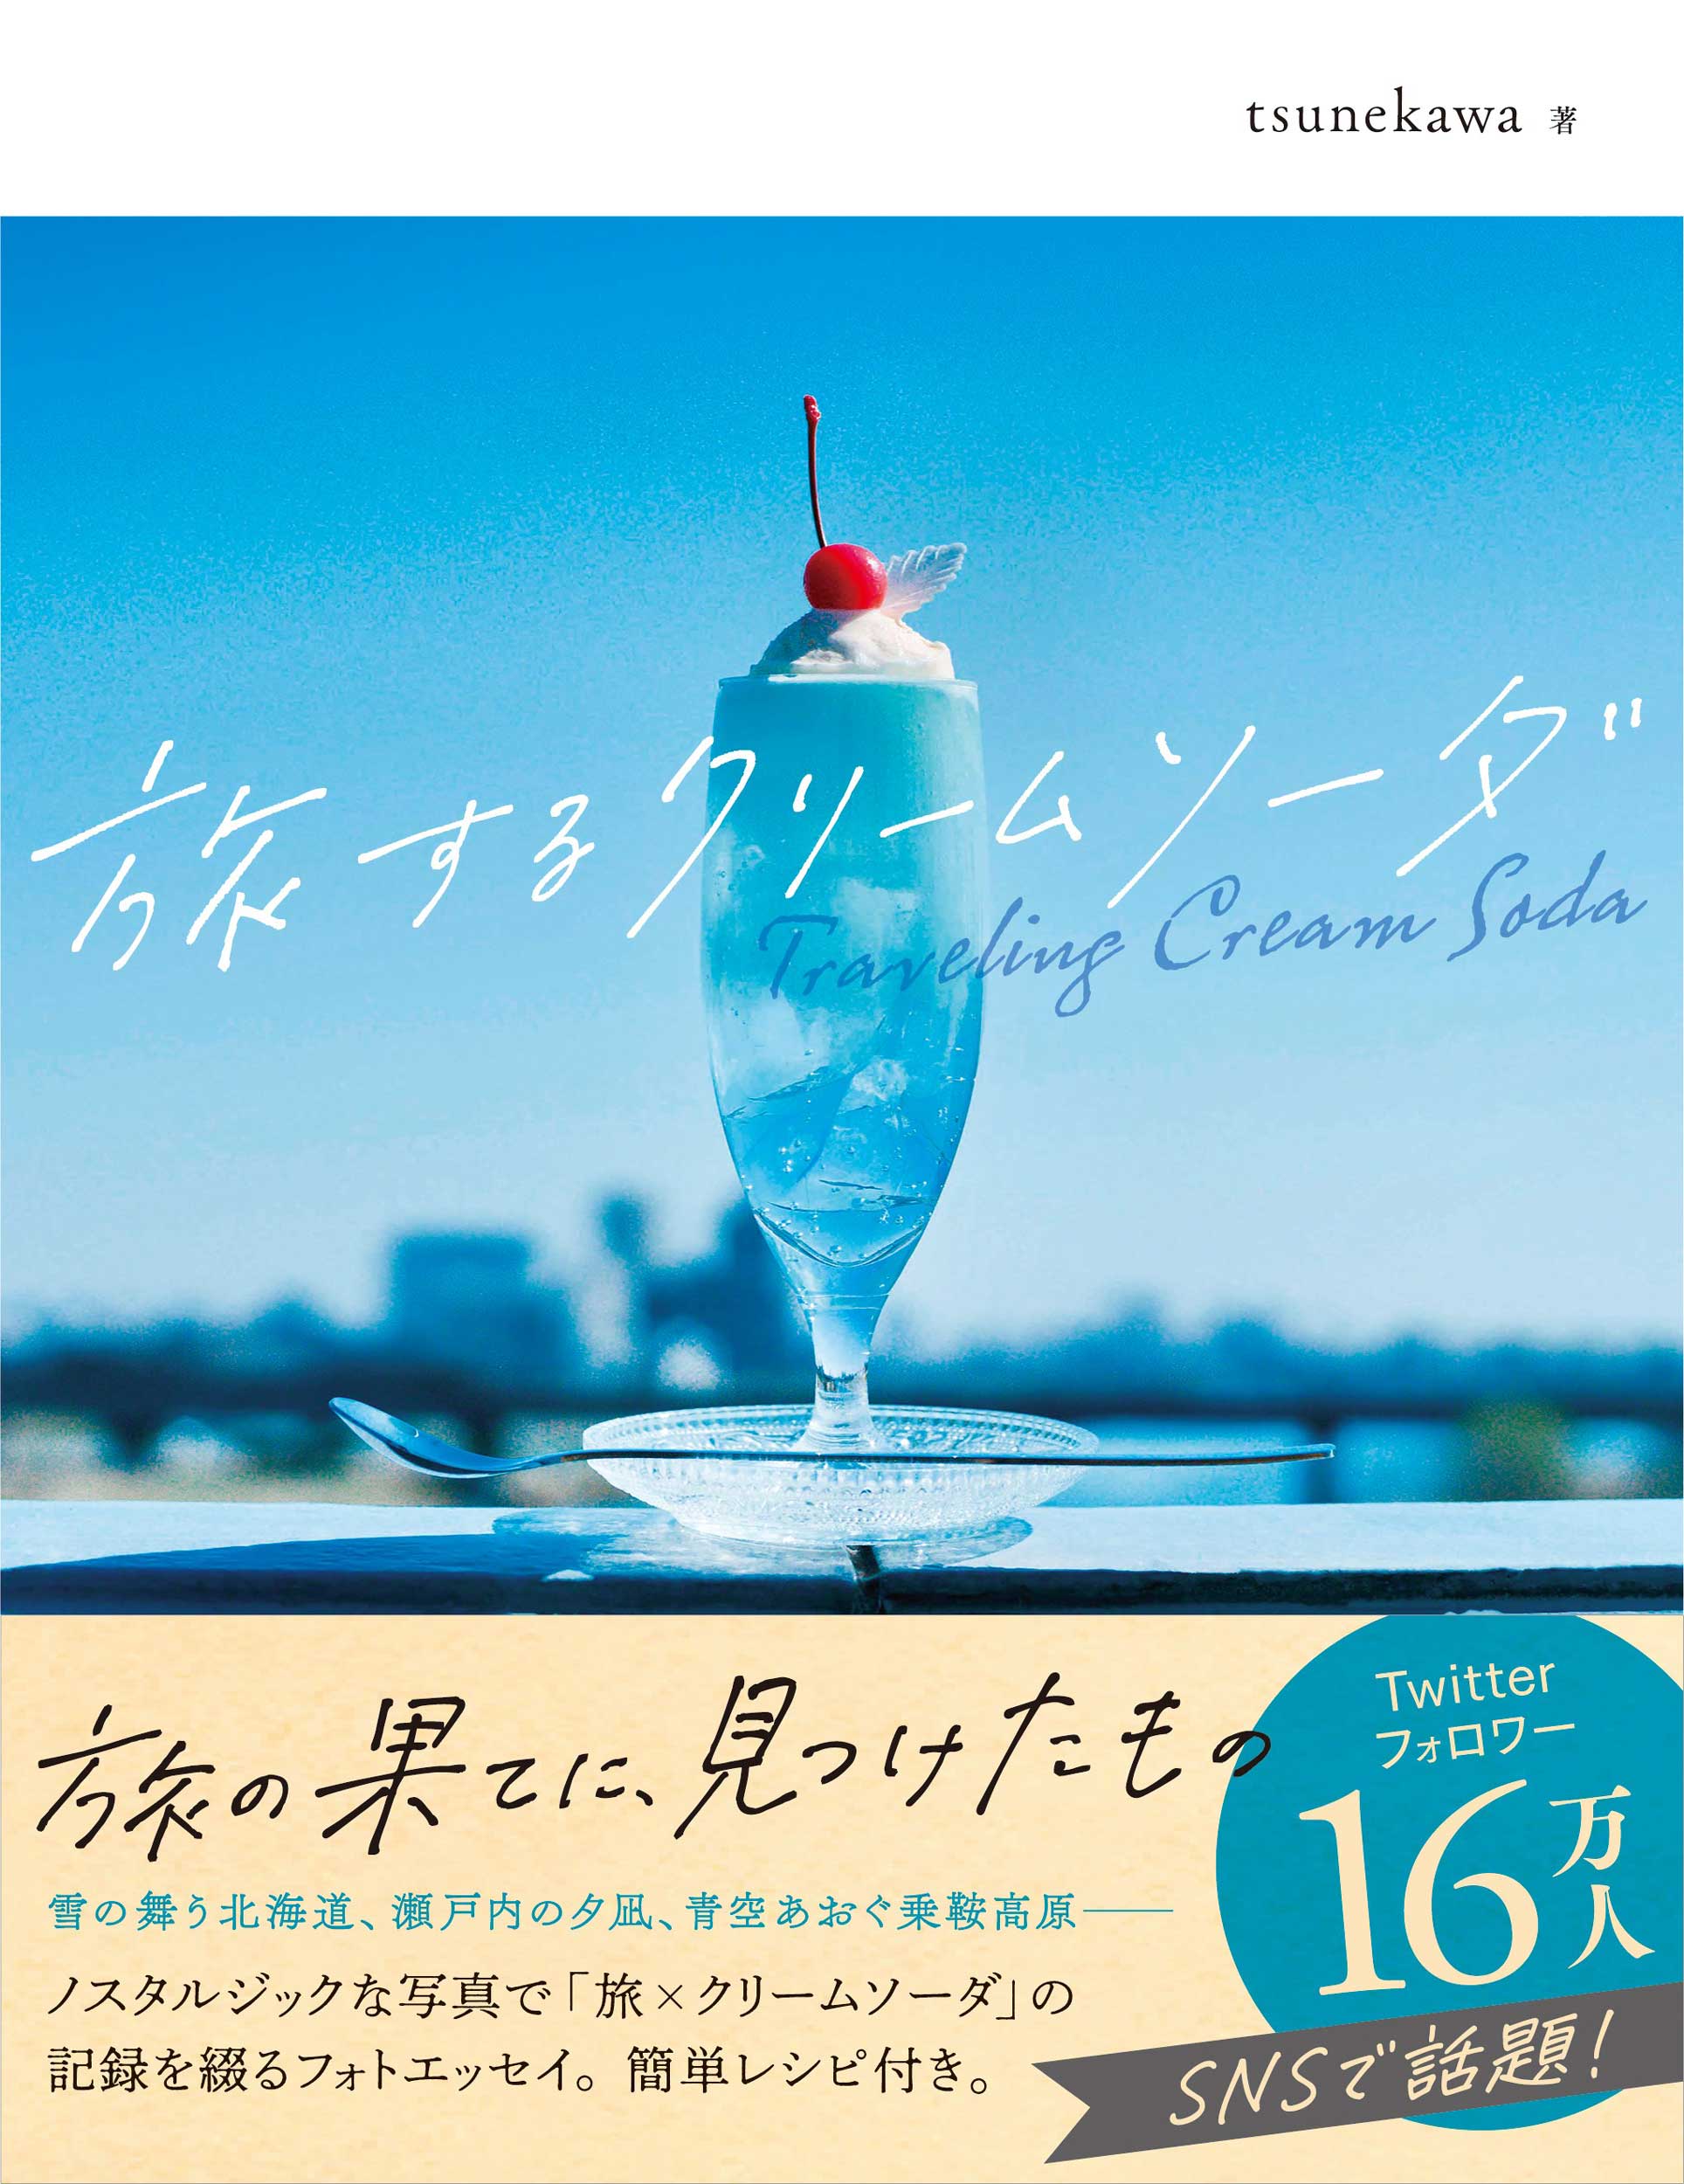 旅するクリームソーダの商品画像